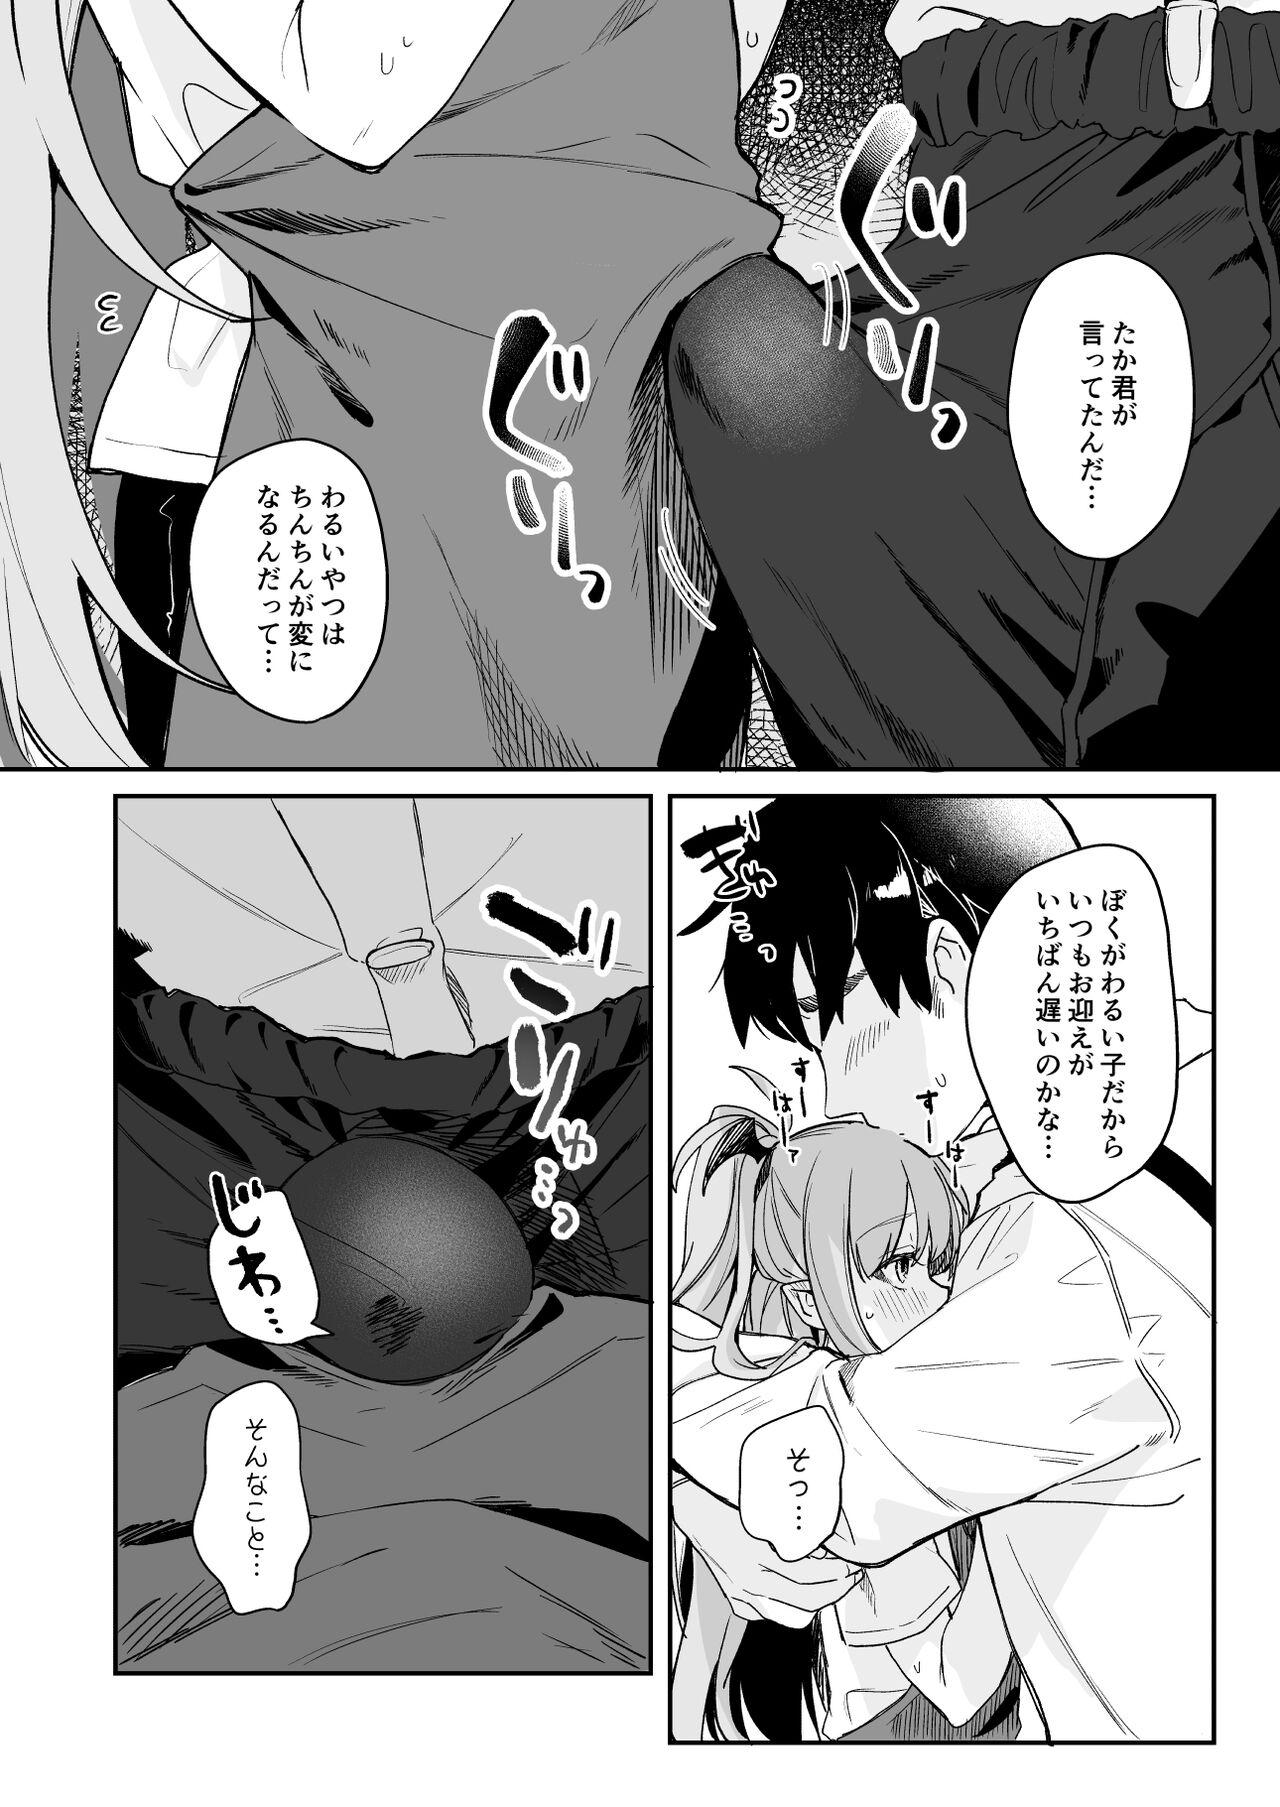 Gozada [Tamano Kedama] Kodomo no Hi (Imishin) ni Mukete Manga o Kaku - Original Gagging - Page 6